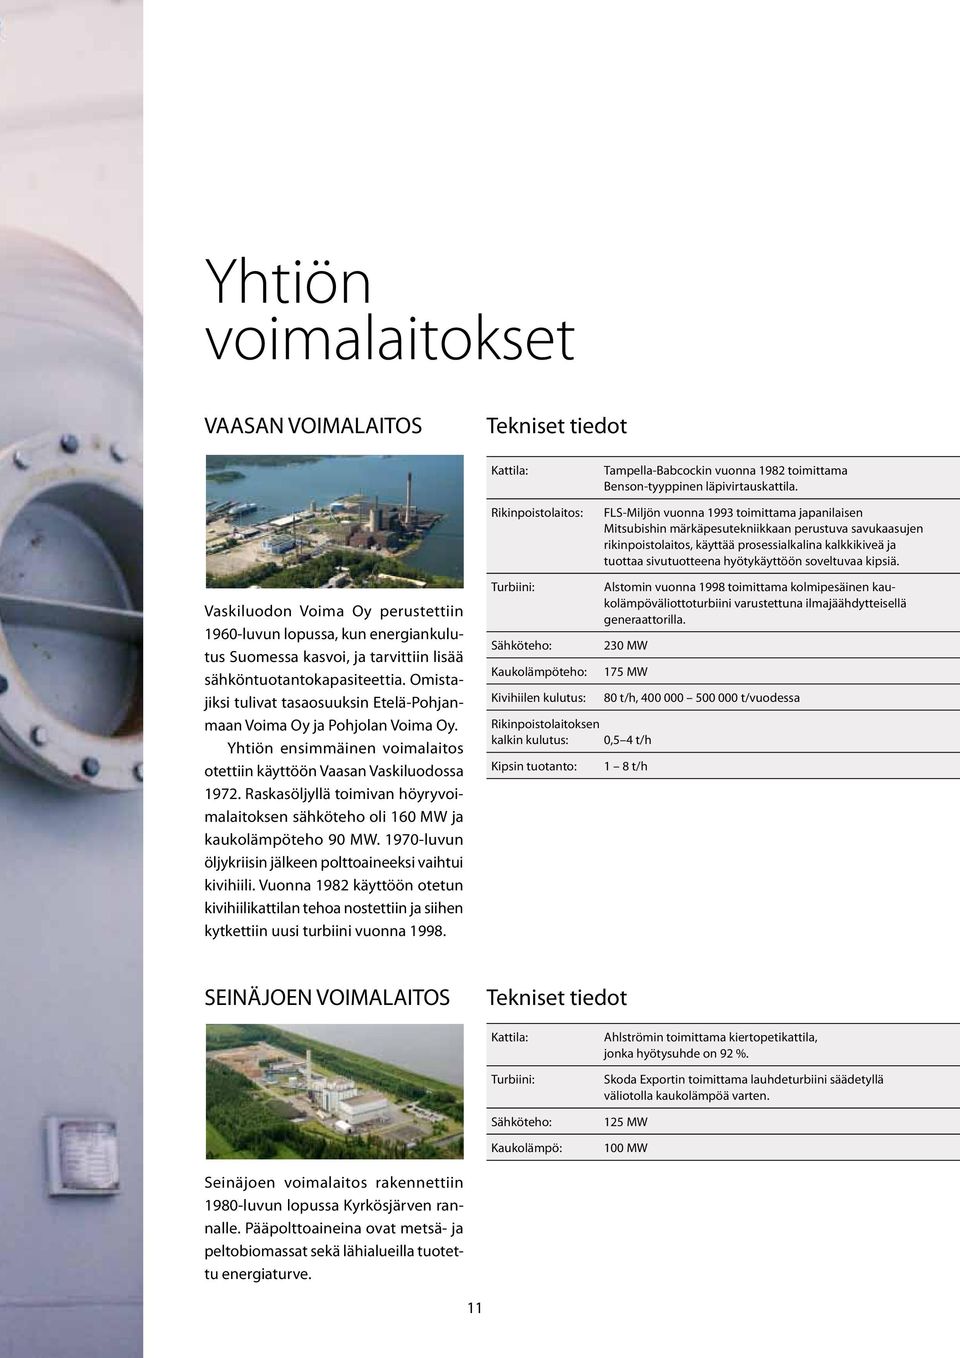 soveltuvaa kipsiä. Vaskiluodon Voima Oy perustettiin 1960-luvun lopussa, kun energiankulutus Suomessa kasvoi, ja tarvittiin lisää sähköntuotantokapasiteettia.